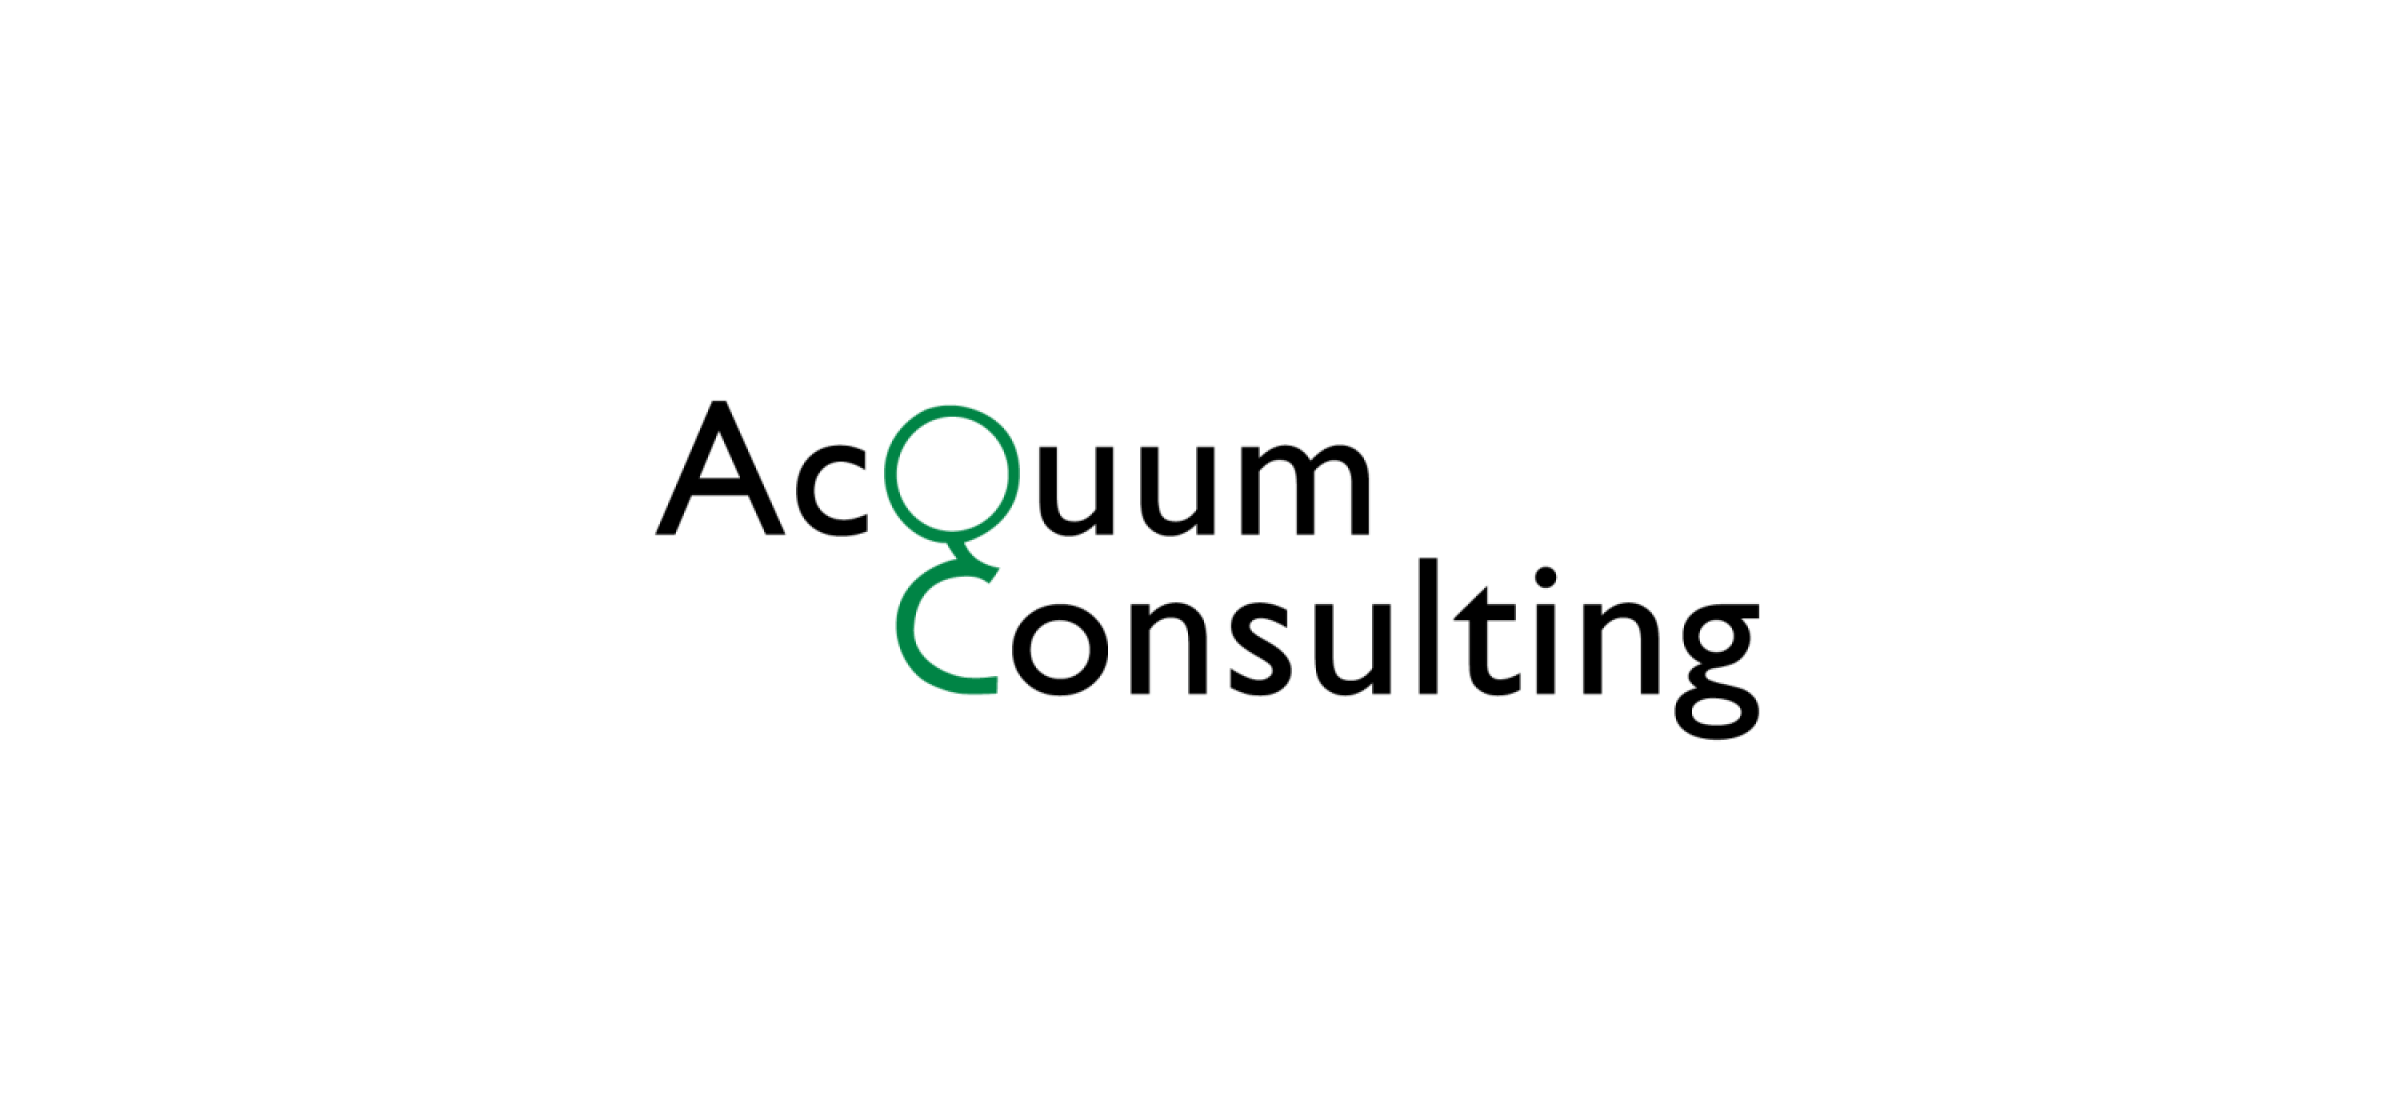 The AcQuum Consulting logo